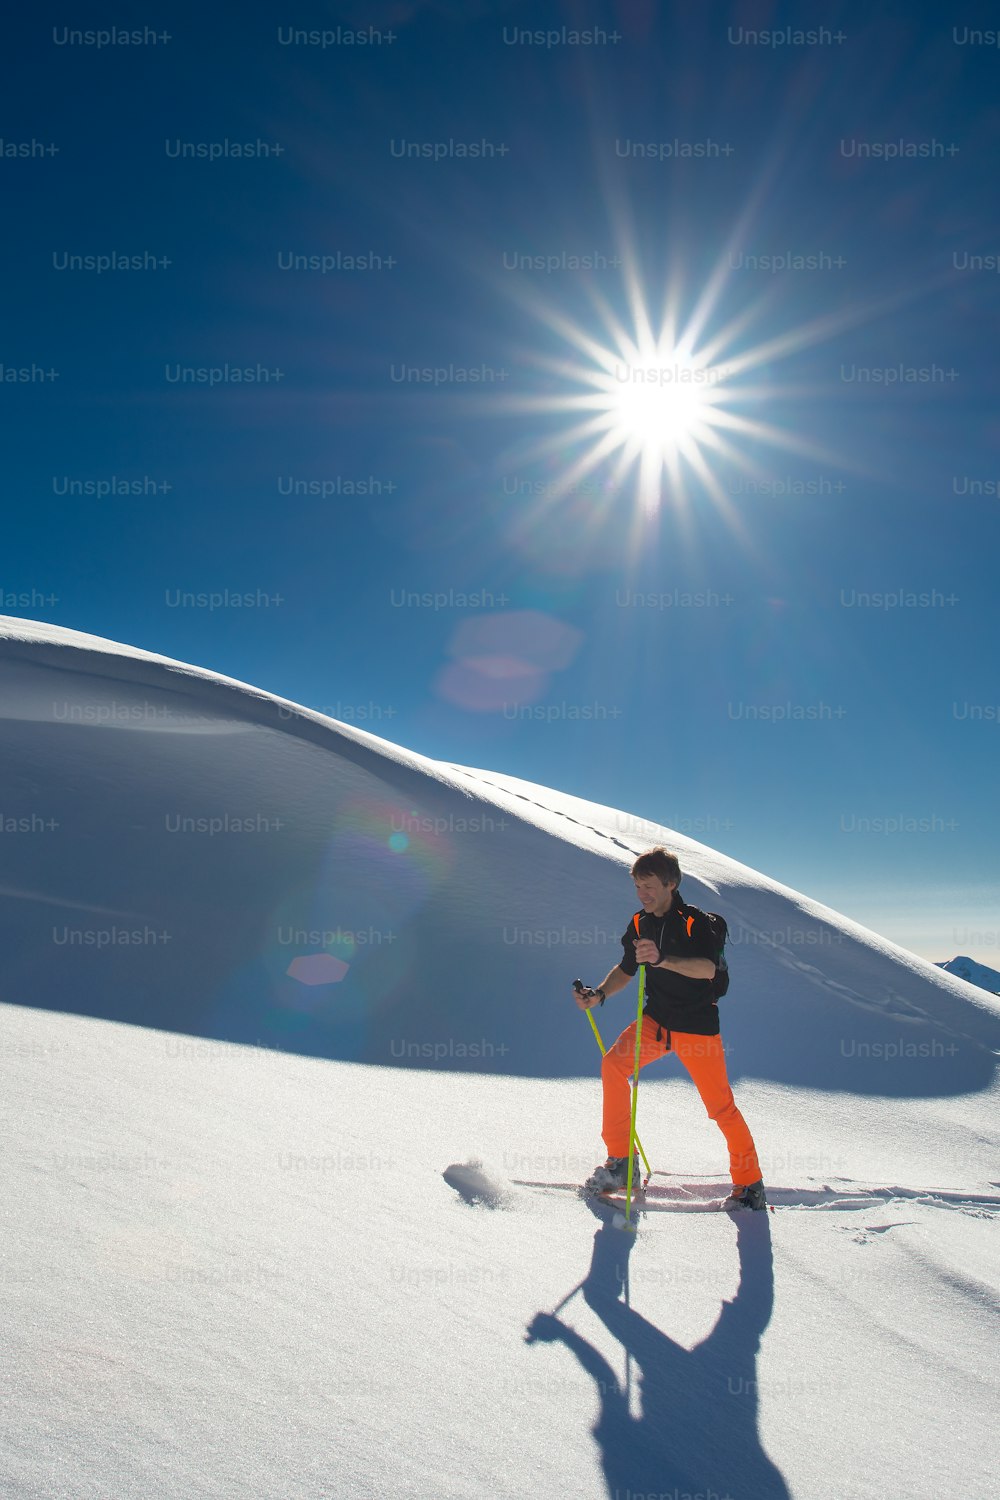 Un esquiador alpino monta esquís y pieles de foca en nieve fresca en un día soleado